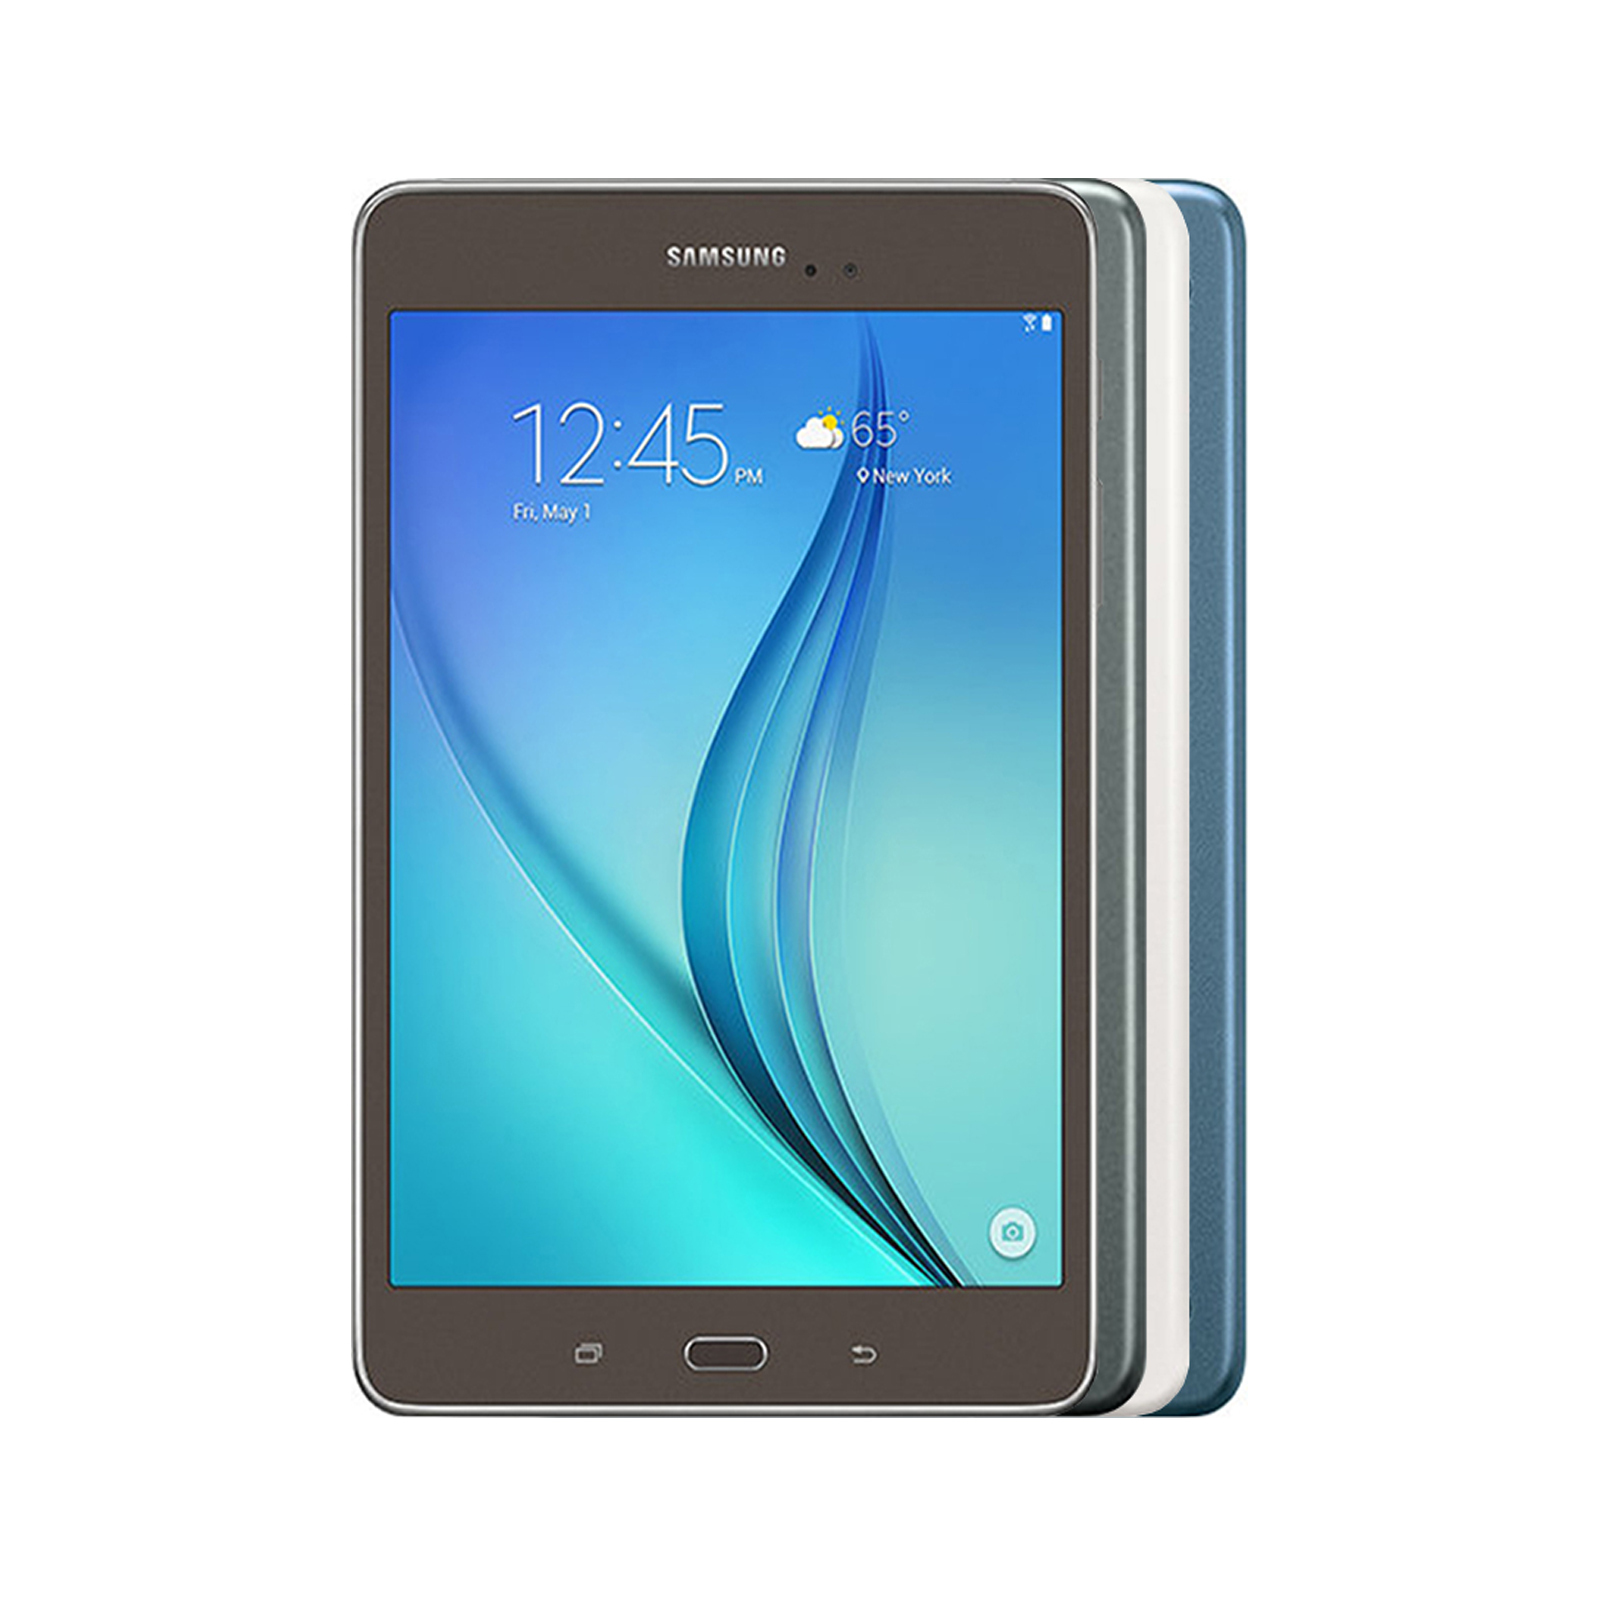 Samsung Galaxy Tab A 9.7 - Good Condition